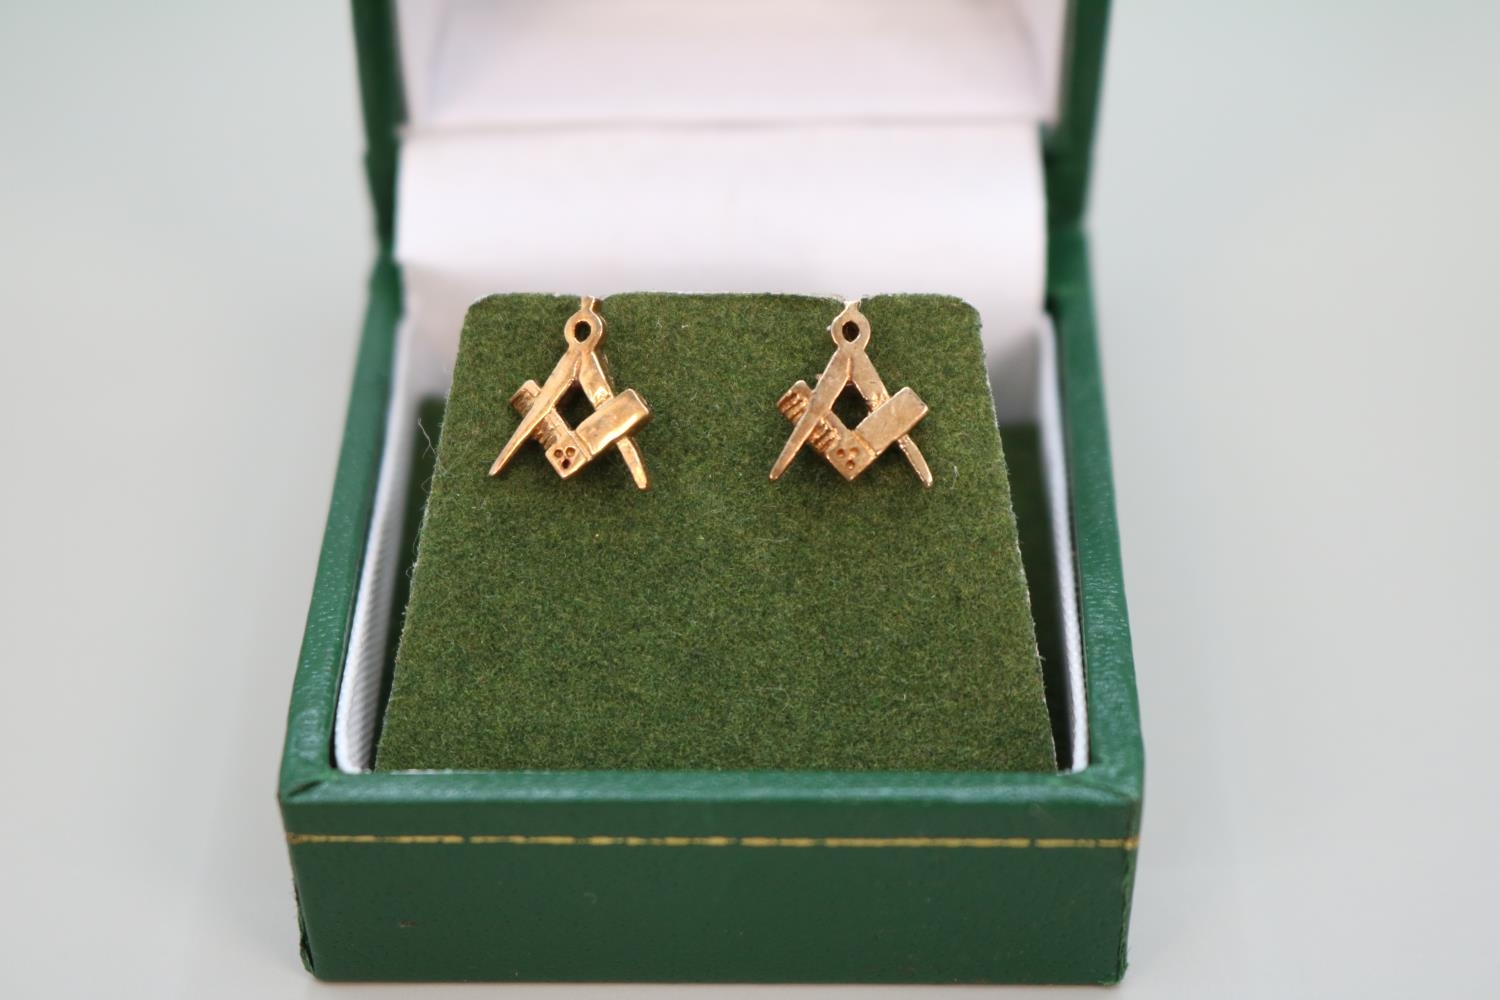 Pair of 9ct Gold Masonic Earrings London 1977